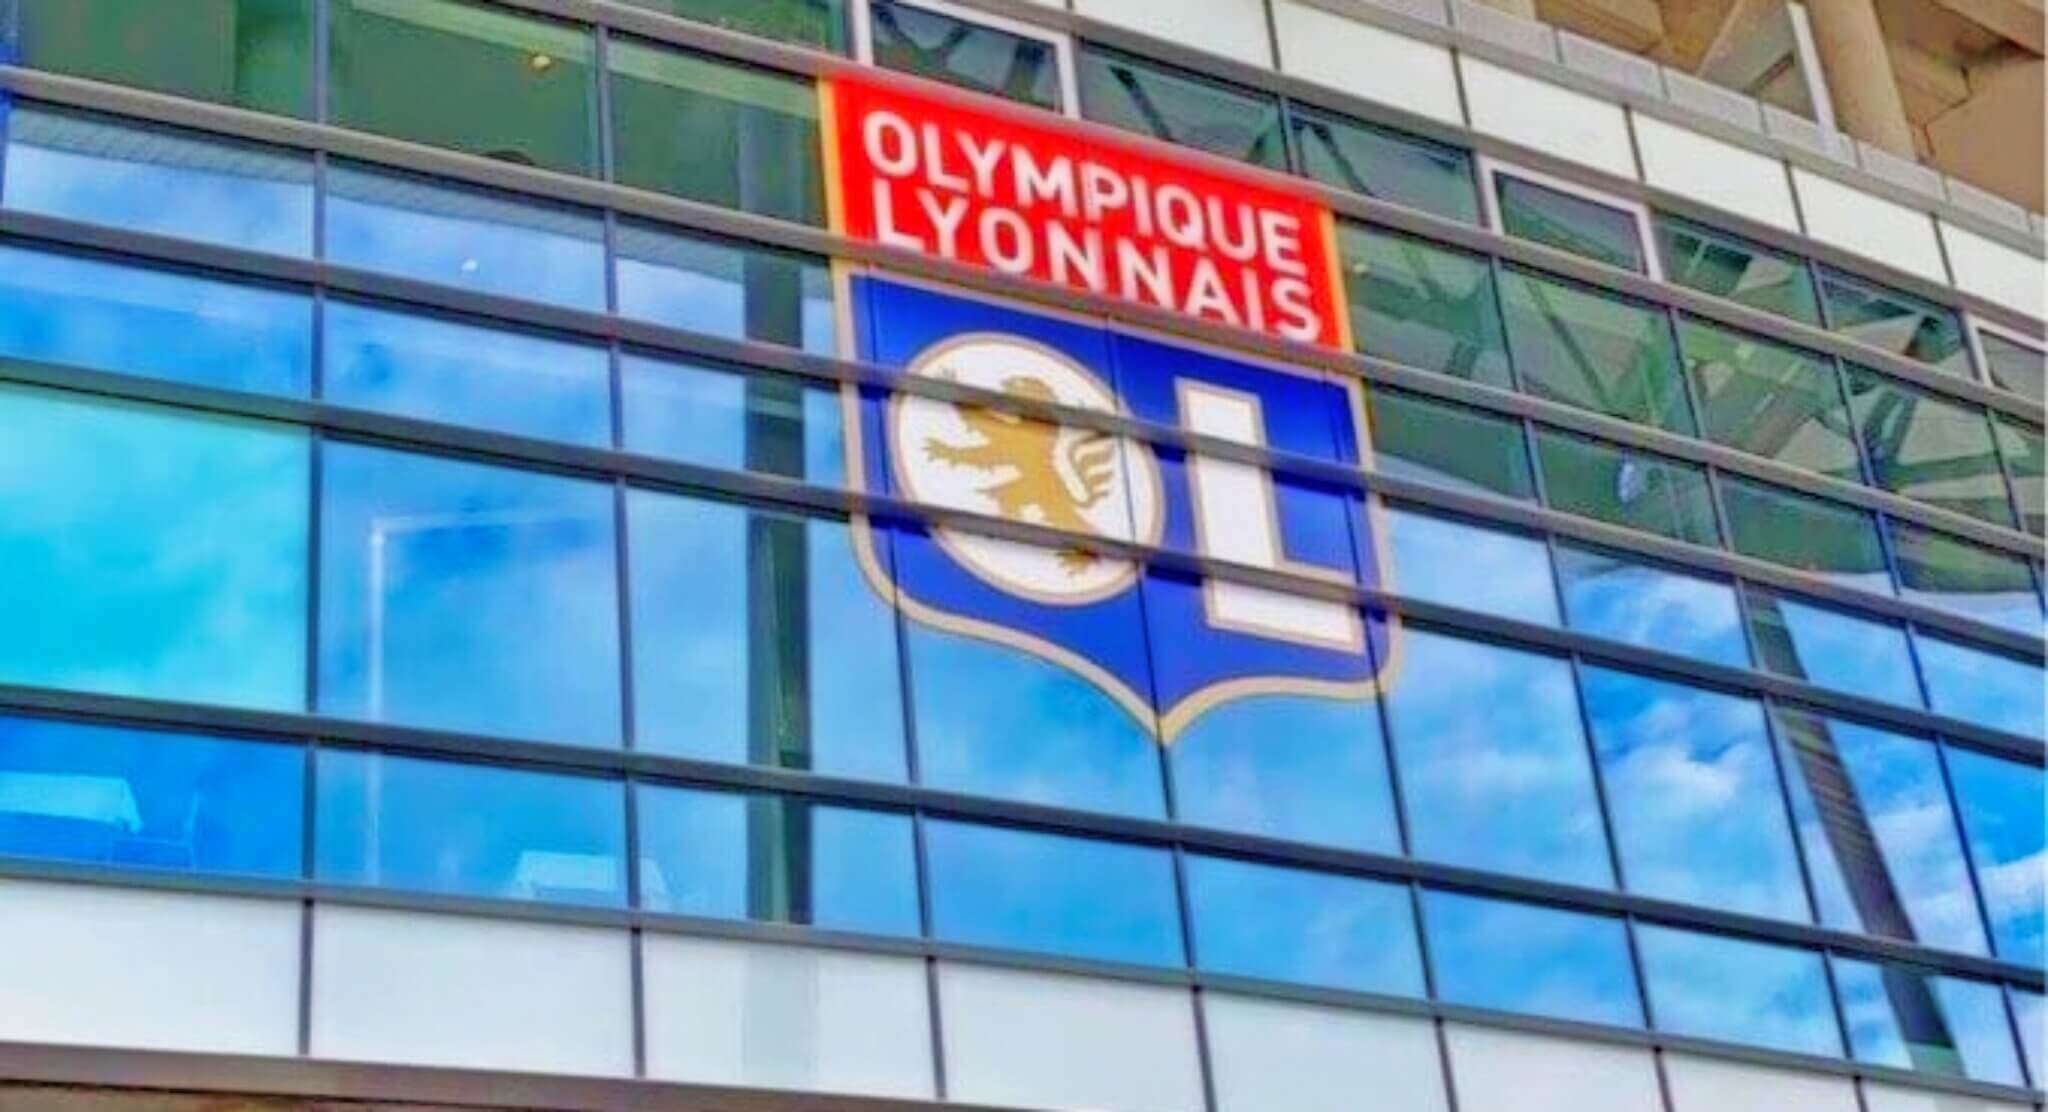 Face à un Olympique Lyonnais offensif, la défense du Racing doit se réveiller